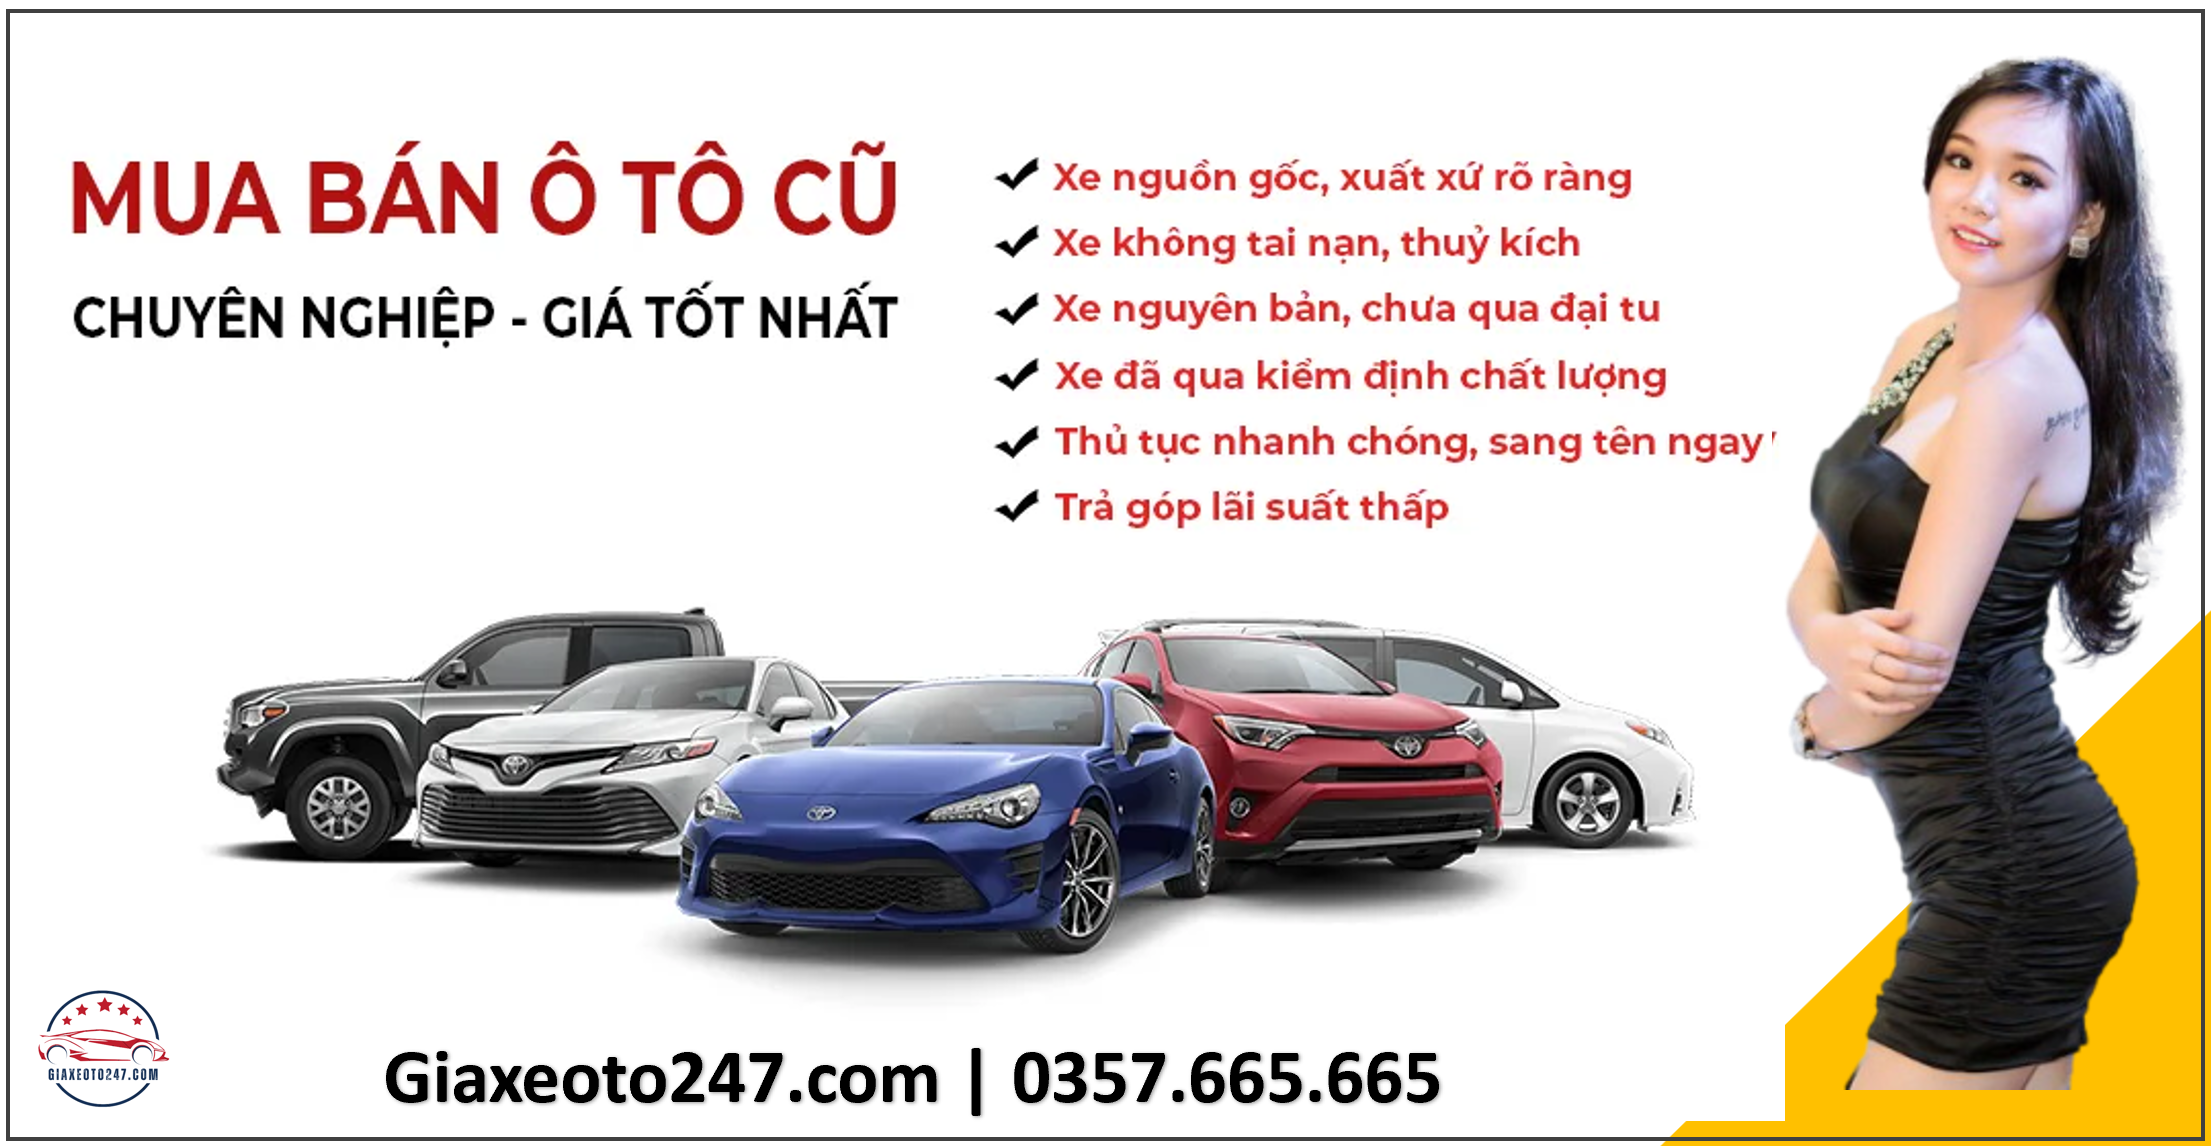 Dich vu thu mua o to cu da qua su dung mua ban toan quoc 3 - Top 6 xe Limousine tuyến Hà Nội Sầm Sơn đưa đón tại nhà